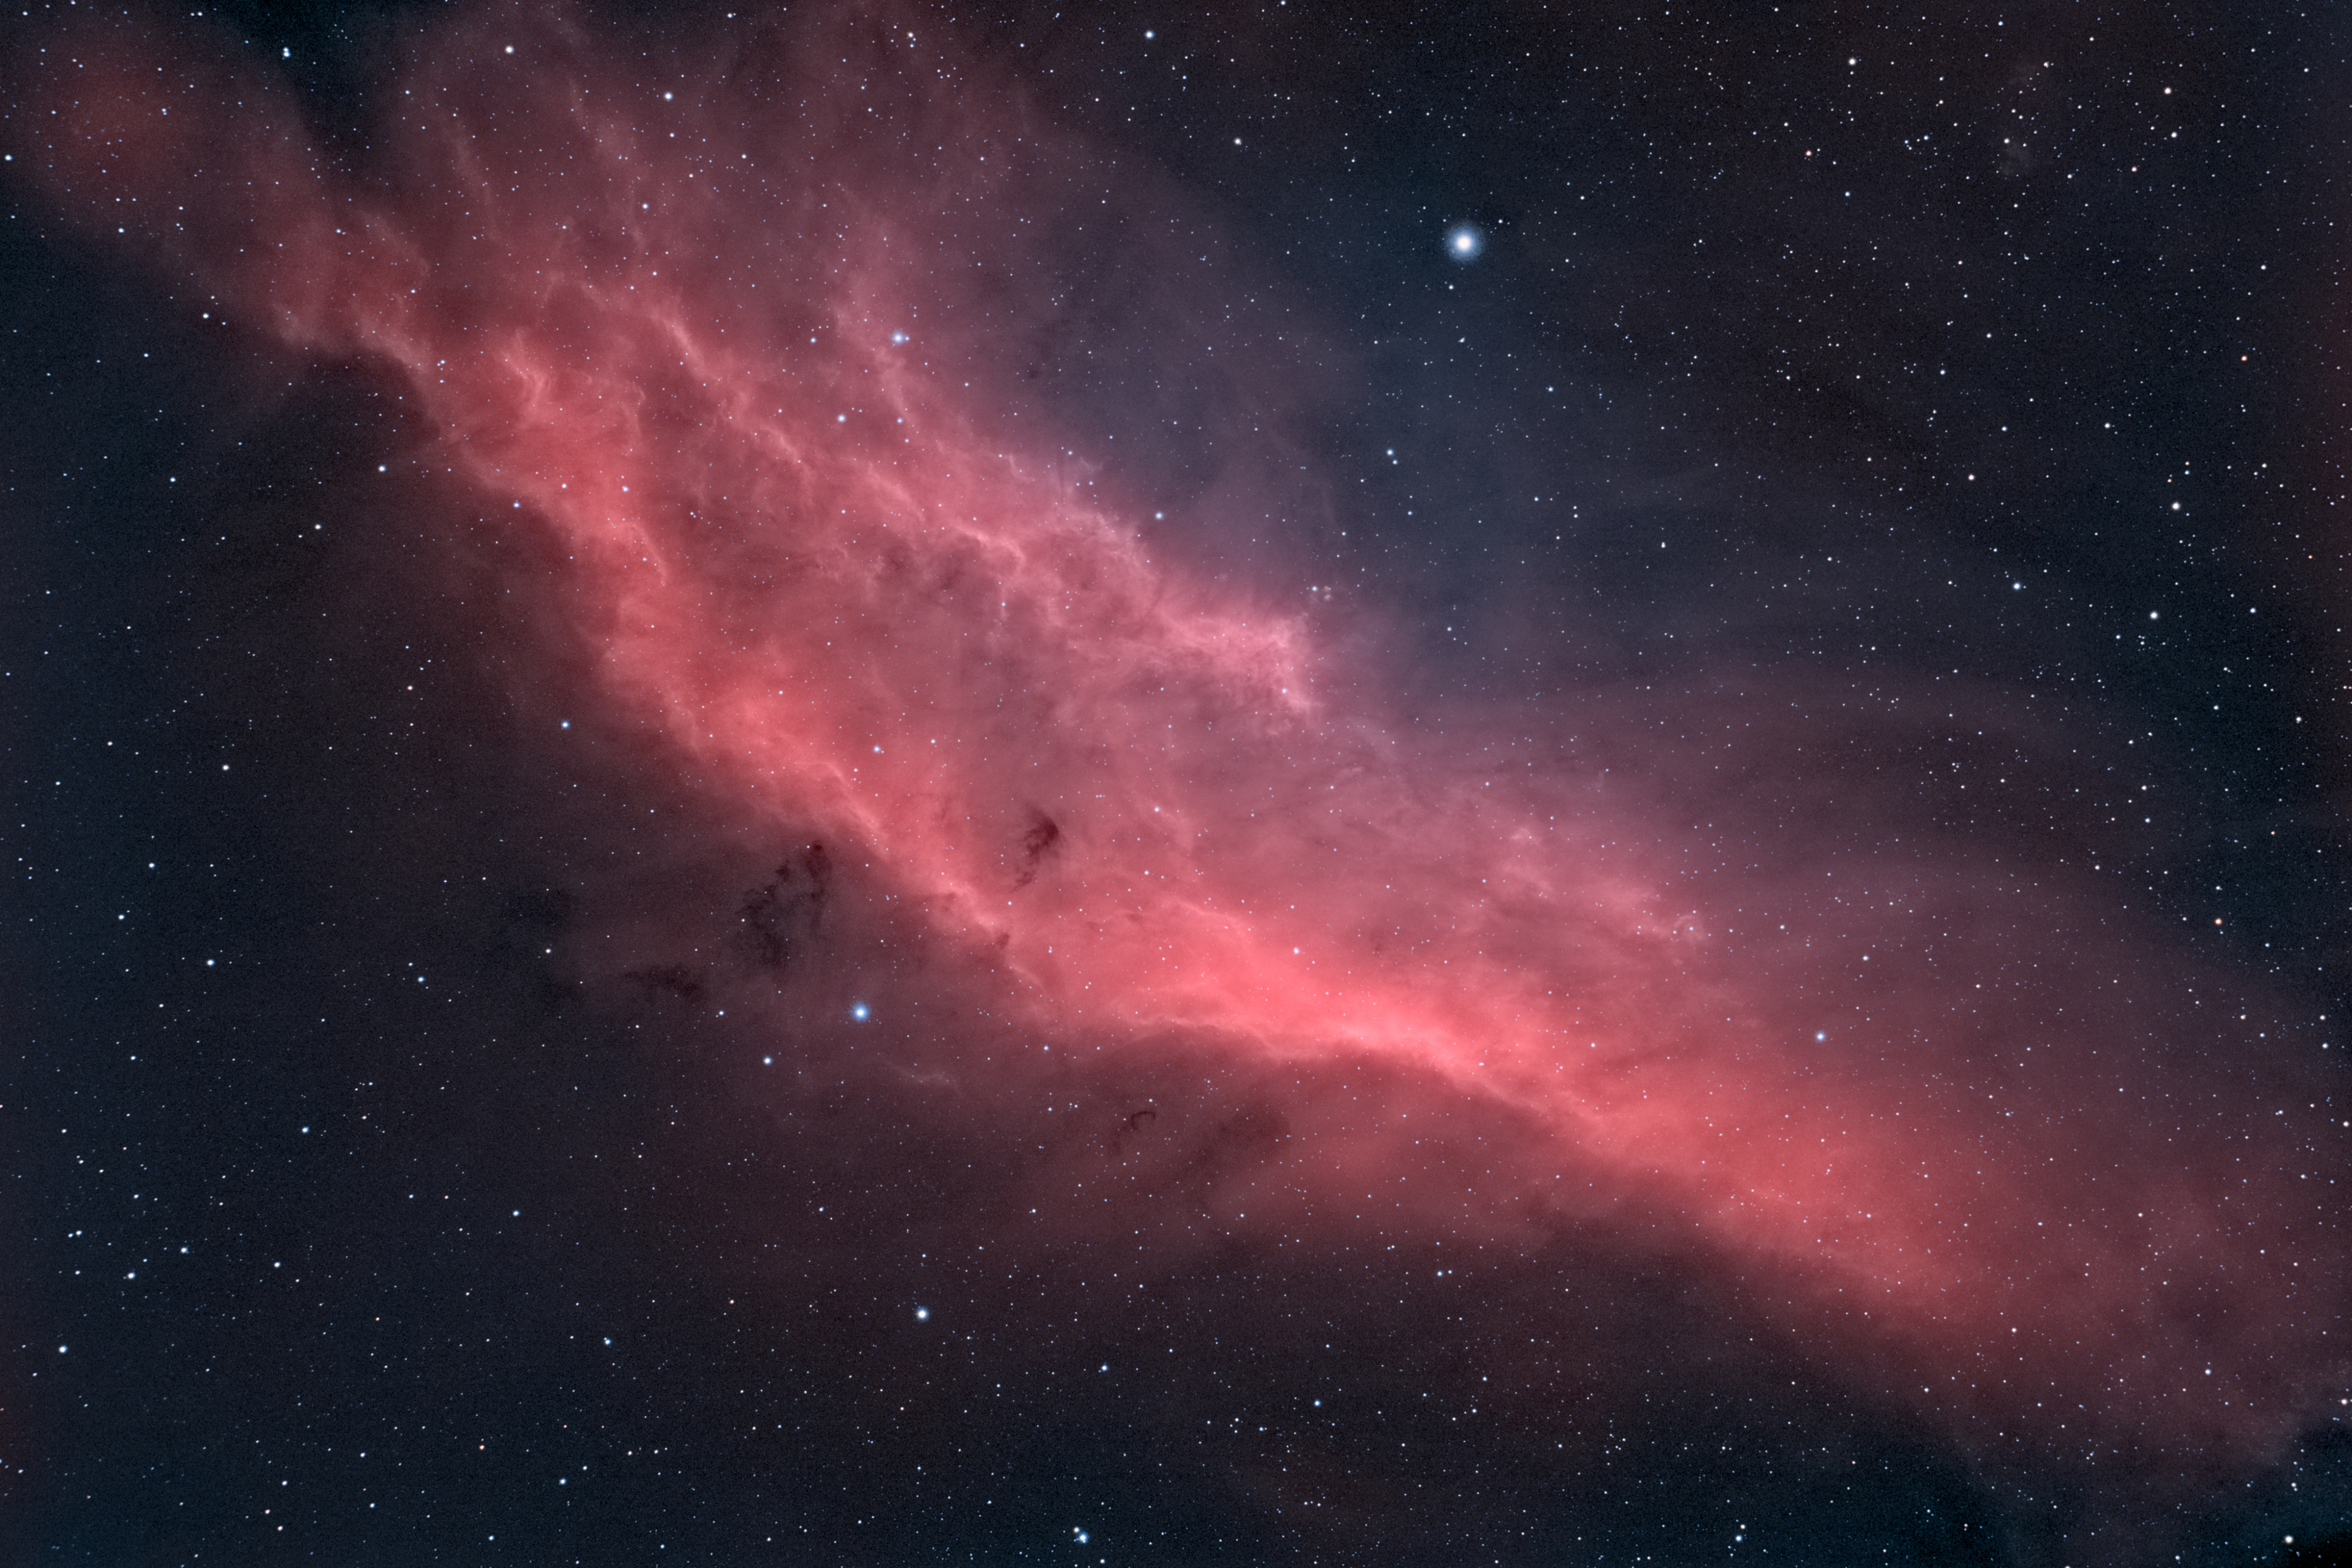 NGC1499 _ Nébuleuse de la Californie